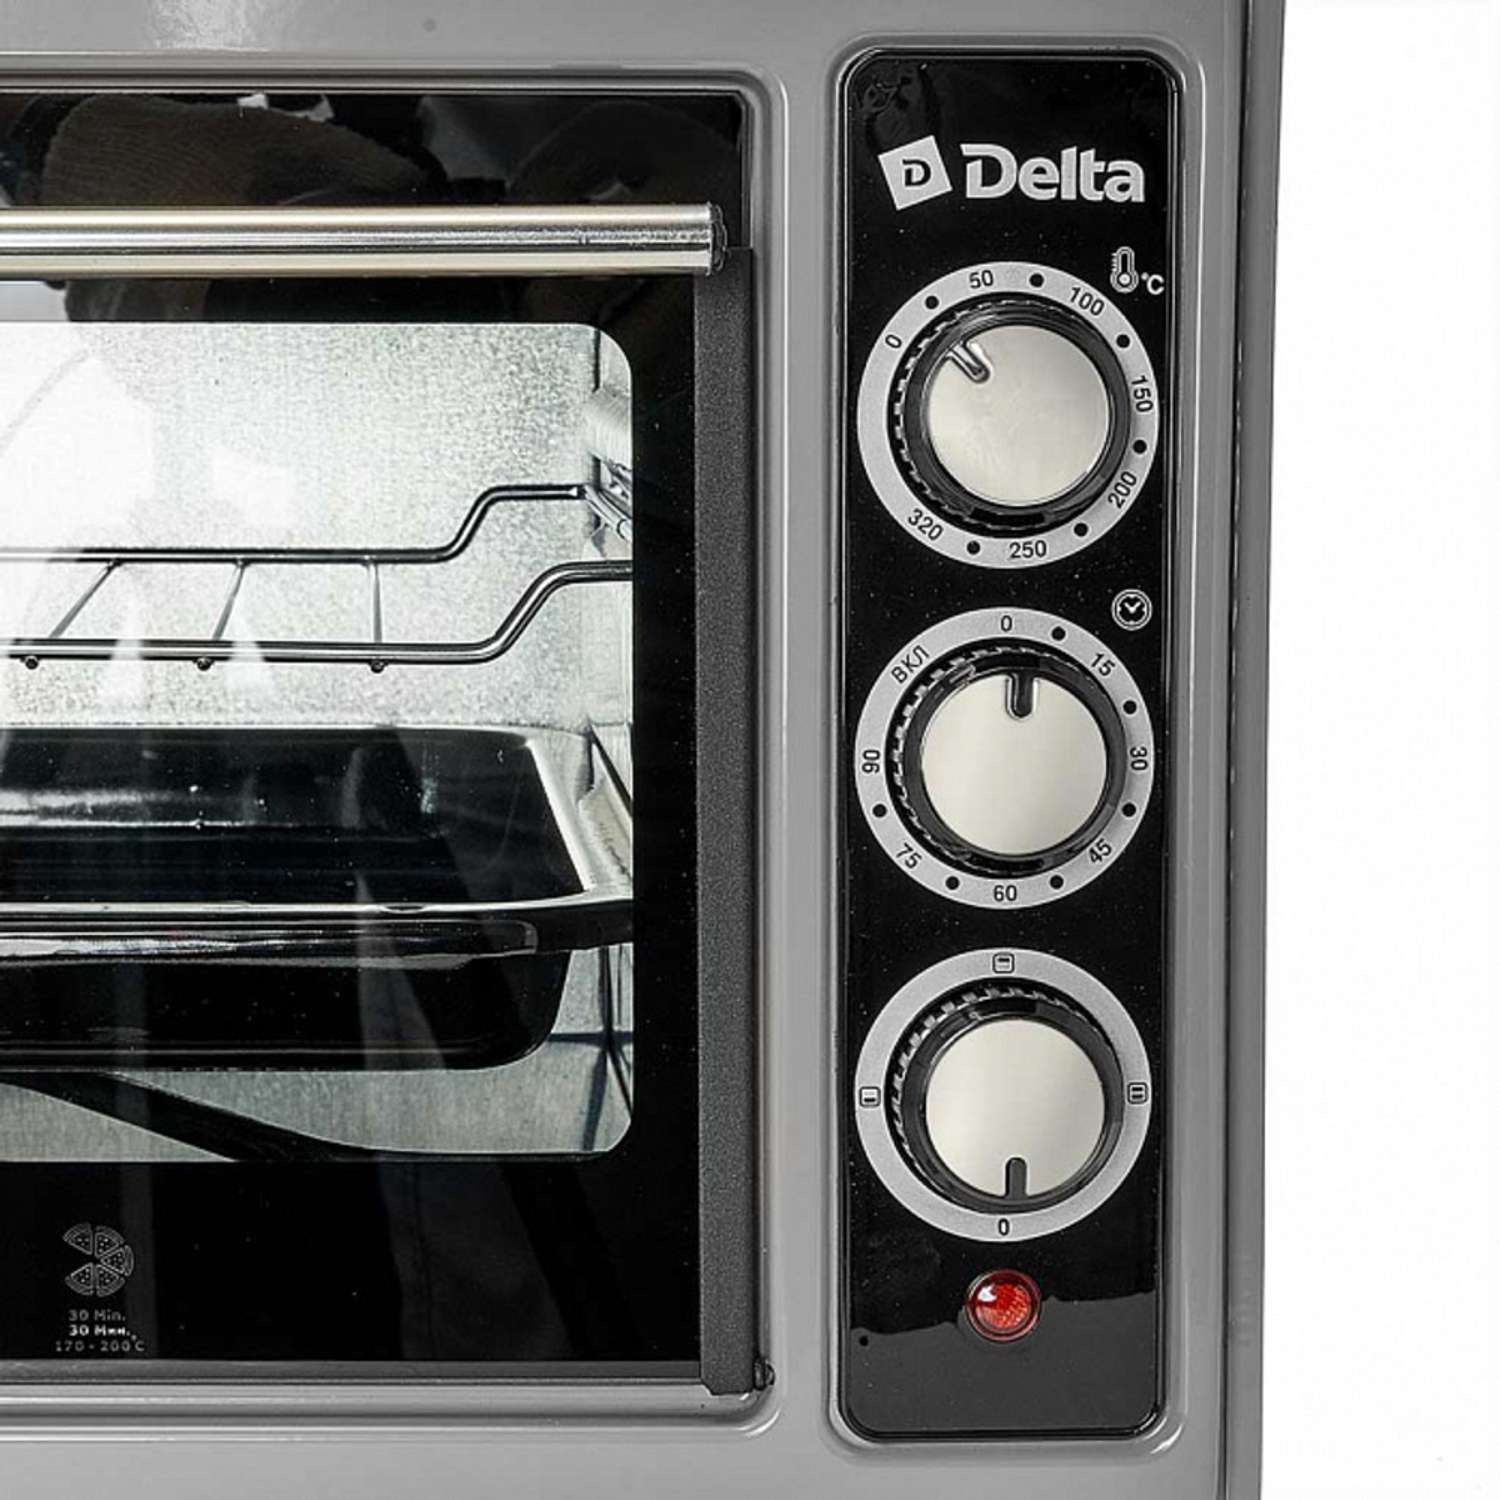 Мини-печь Delta D-0123 серая 1300 Вт 37 л 2 нагревательных элемента 1 противень решетка таймер - фото 2